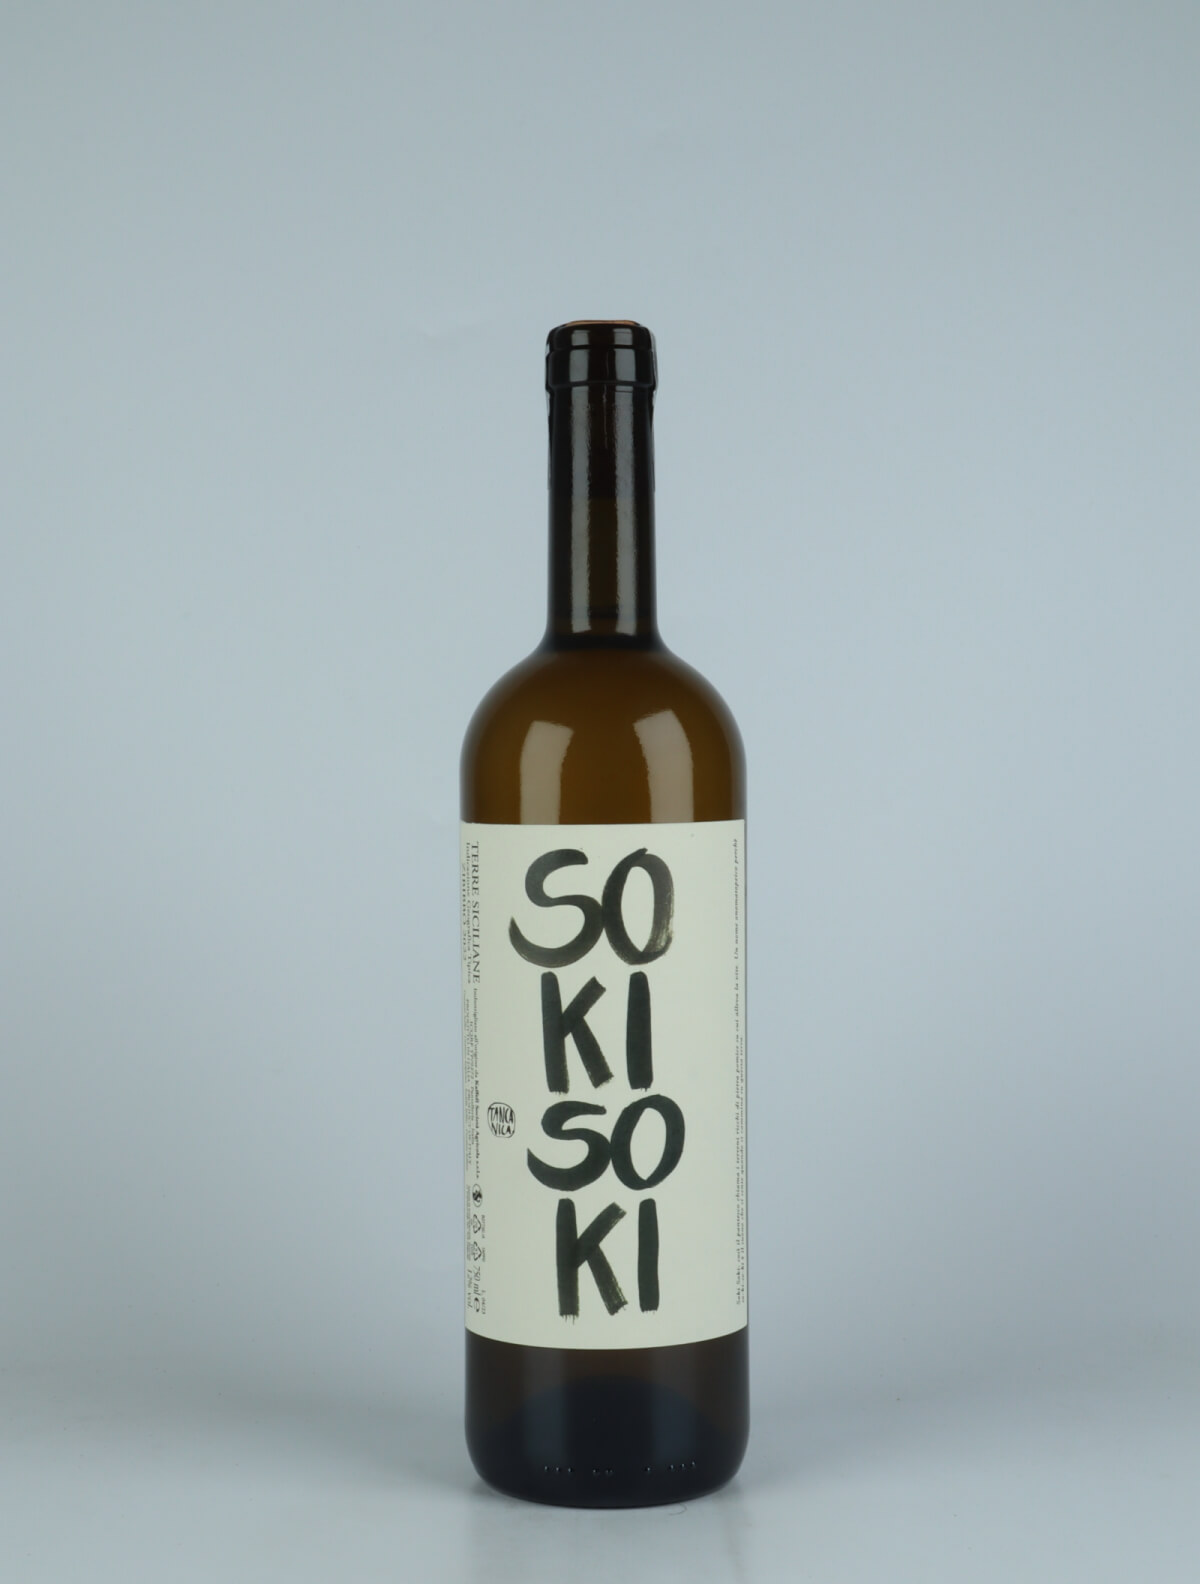 A bottle 2022 Soki Soki Orange wine from Tanca Nica, Sicily in Italy